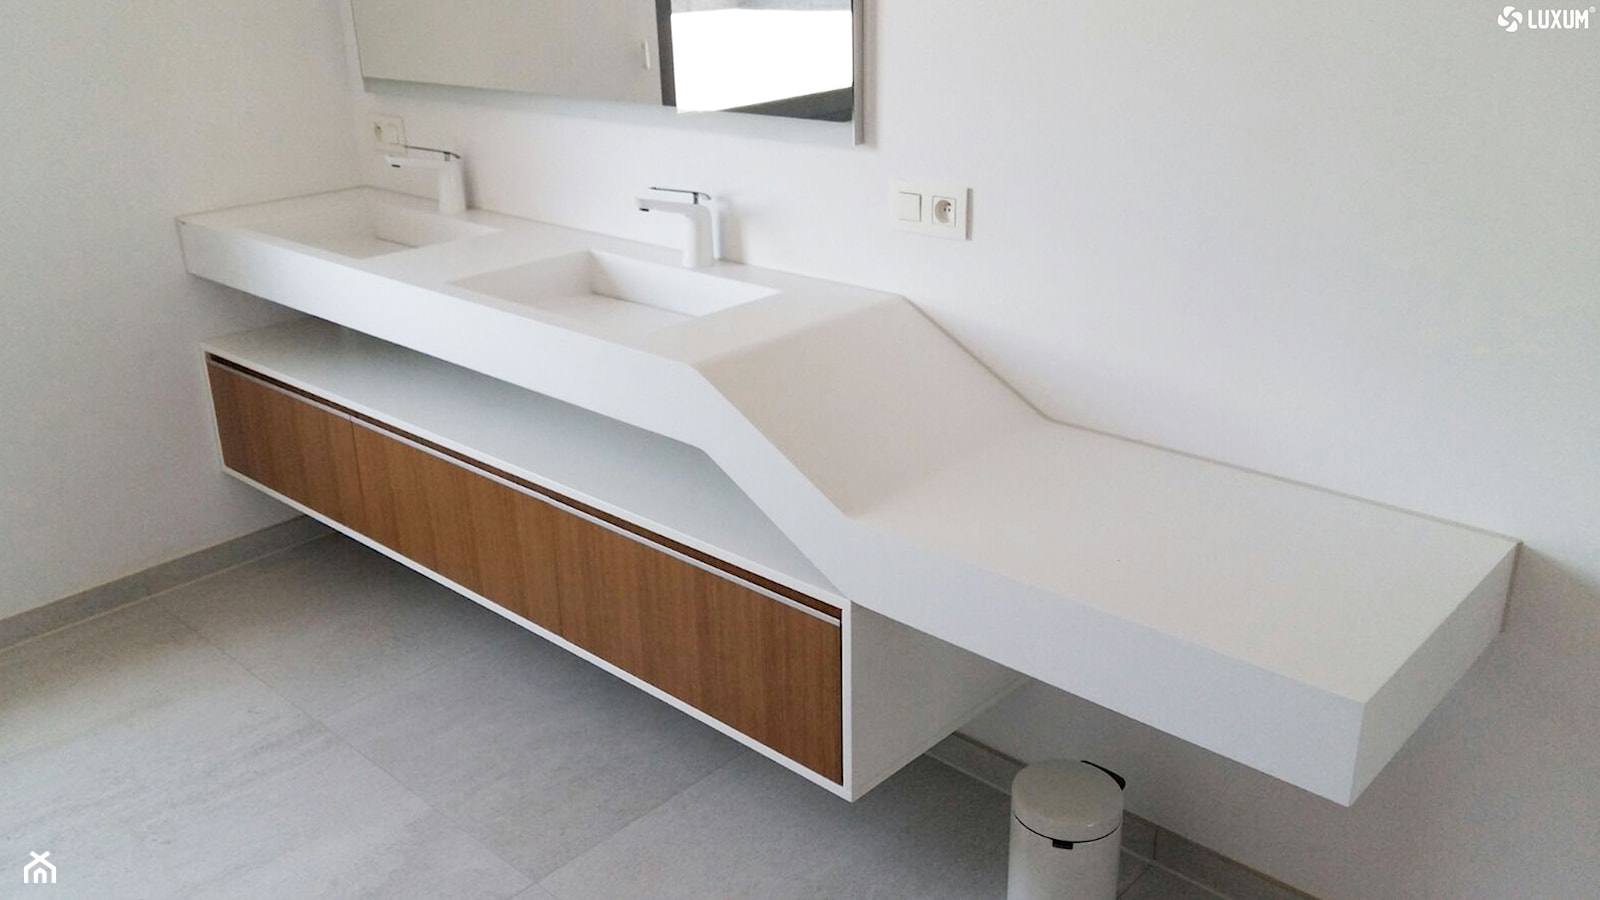 Podwójna geometryczna umywalka z blatem i fornirowaną szafką. - Łazienka, styl nowoczesny - zdjęcie od Luxum - Homebook